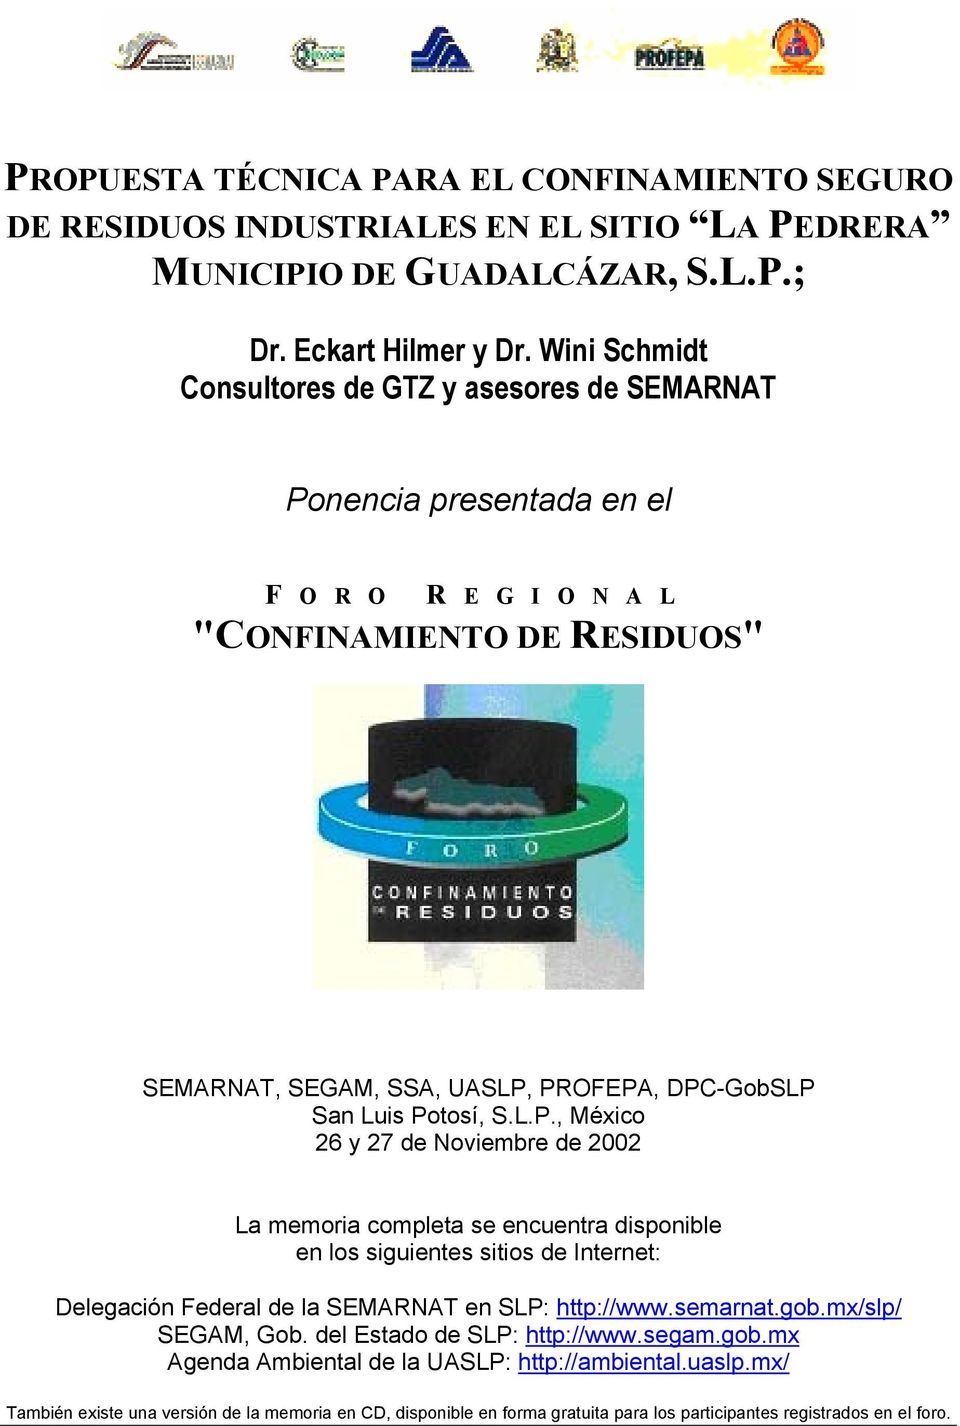 Potosí, S.L.P., México 26 y 27 de Noviembre de 2002 La memoria completa se encuentra disponible en los siguientes sitios de Internet: Delegación Federal de la SEMARNAT en SLP: http://www.semarnat.